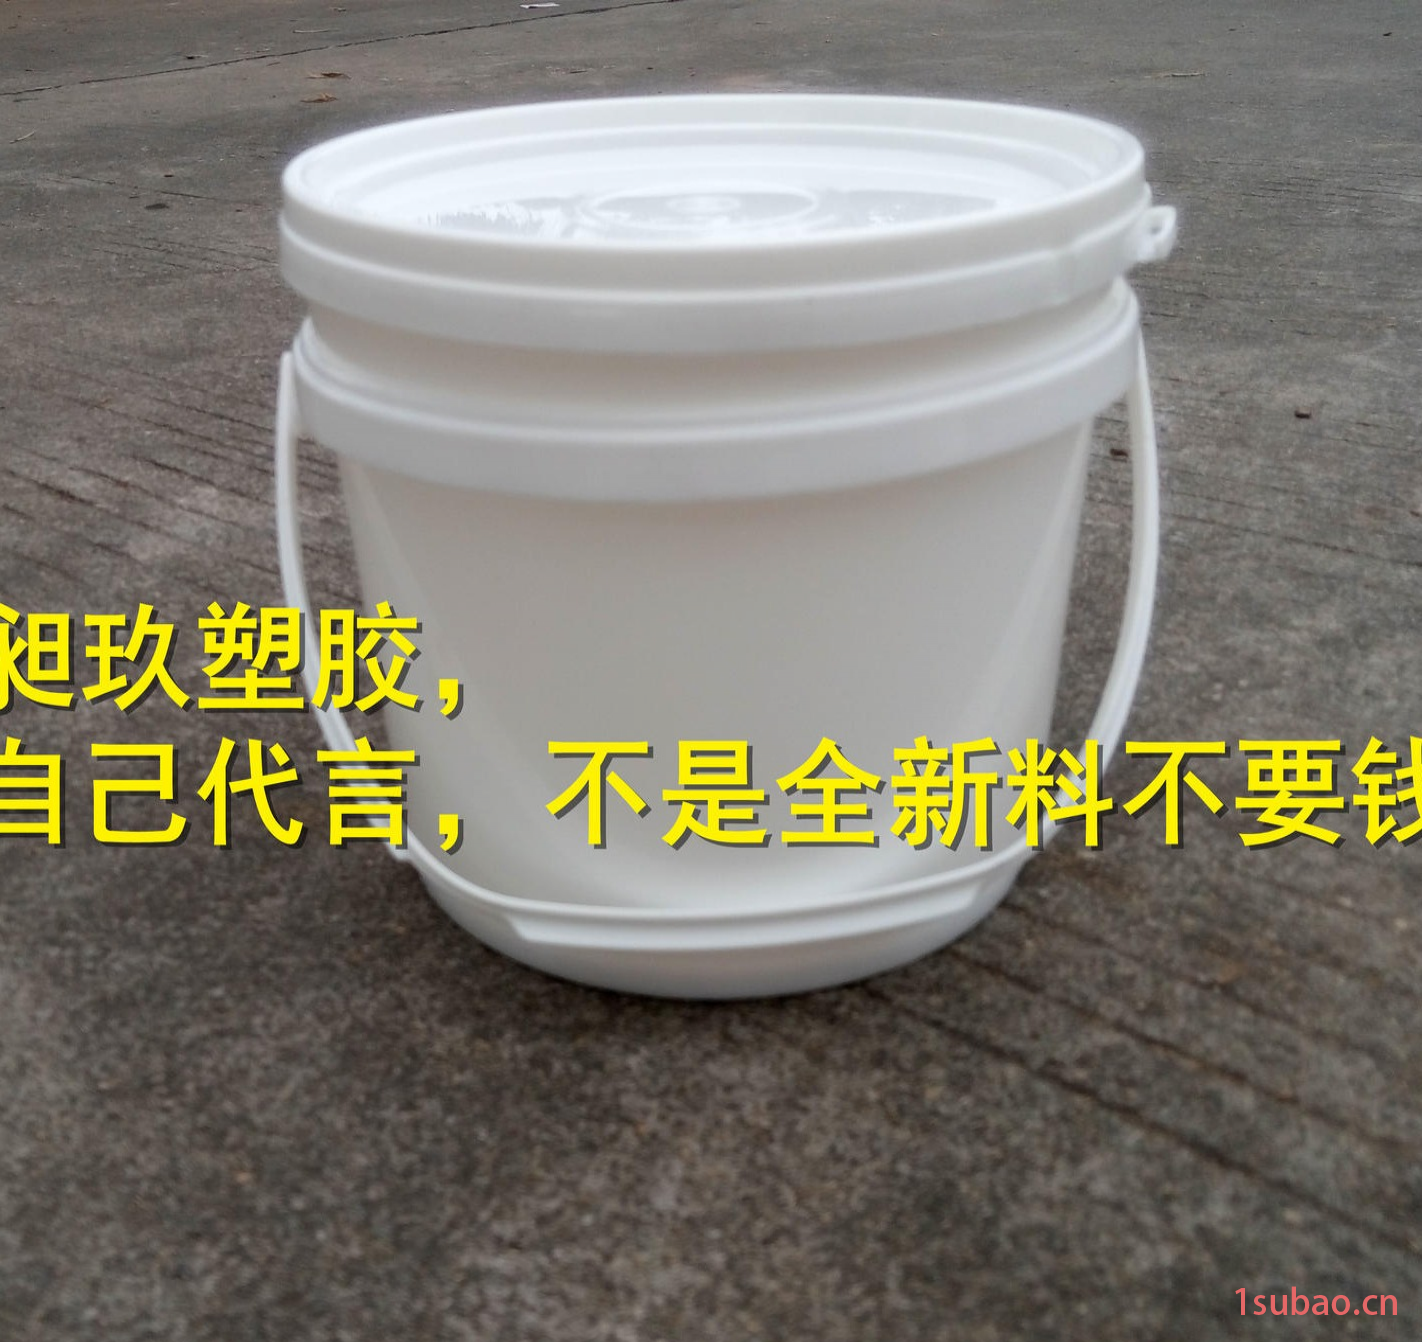 长沙厂家批发3L塑料桶涂料桶油墨桶样品桶PP带提手胶桶